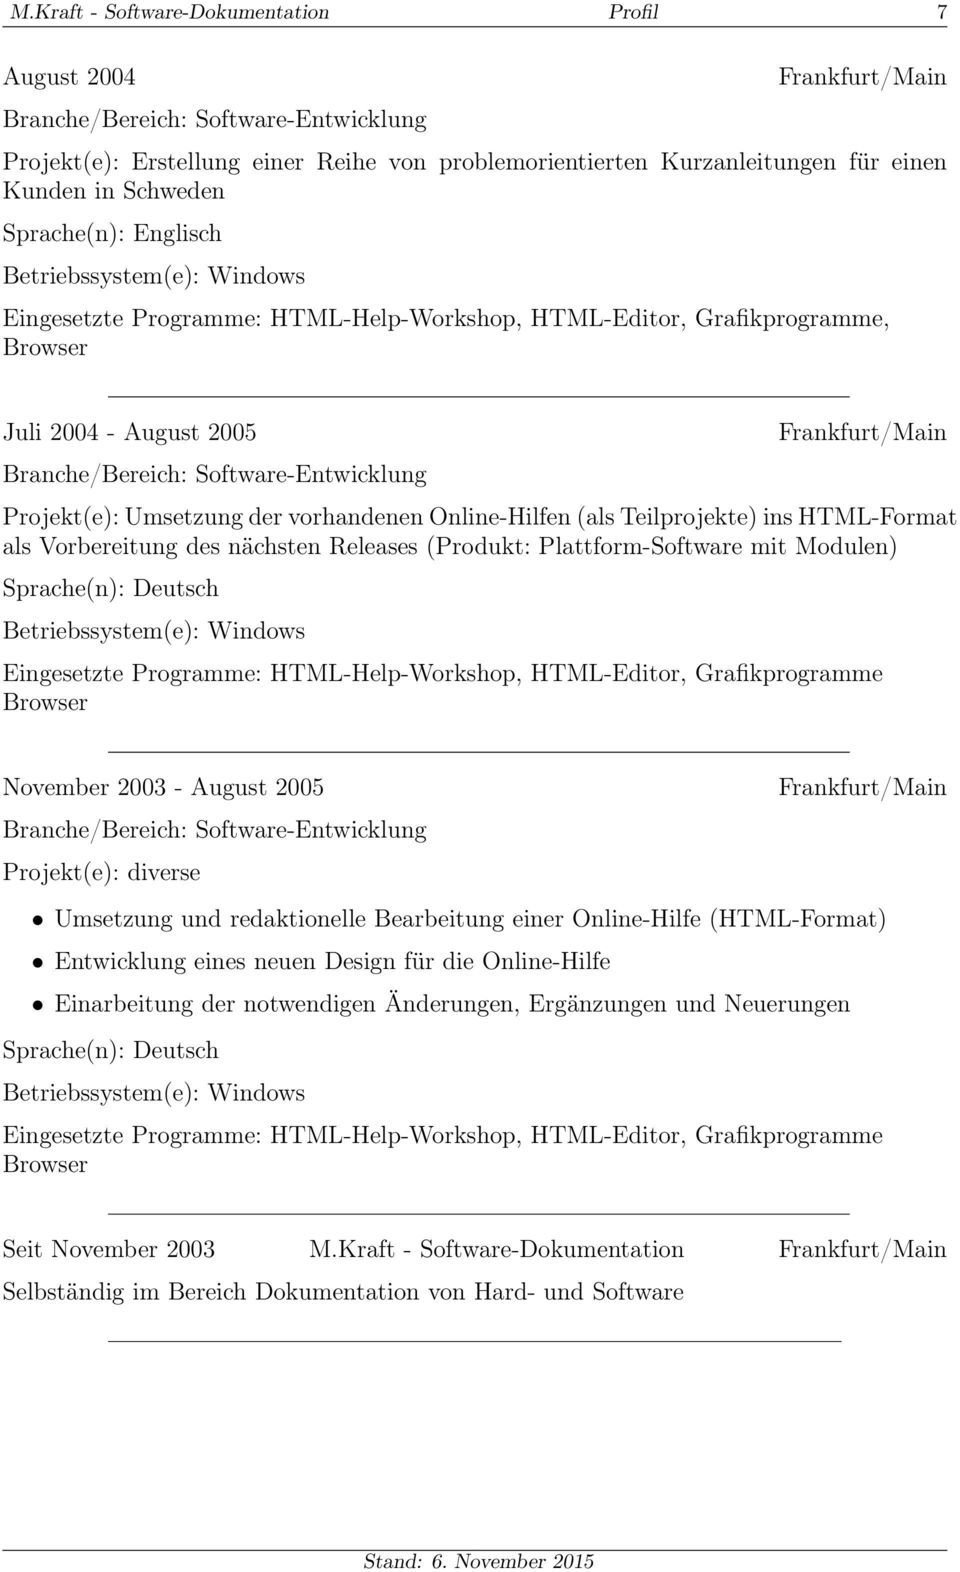 des nächsten Releases (Produkt: Plattform-Software mit Modulen) Eingesetzte Programme: HTML-Help-Workshop, HTML-Editor, Grafikprogramme Browser November 2003 - August 2005 Projekt(e): diverse